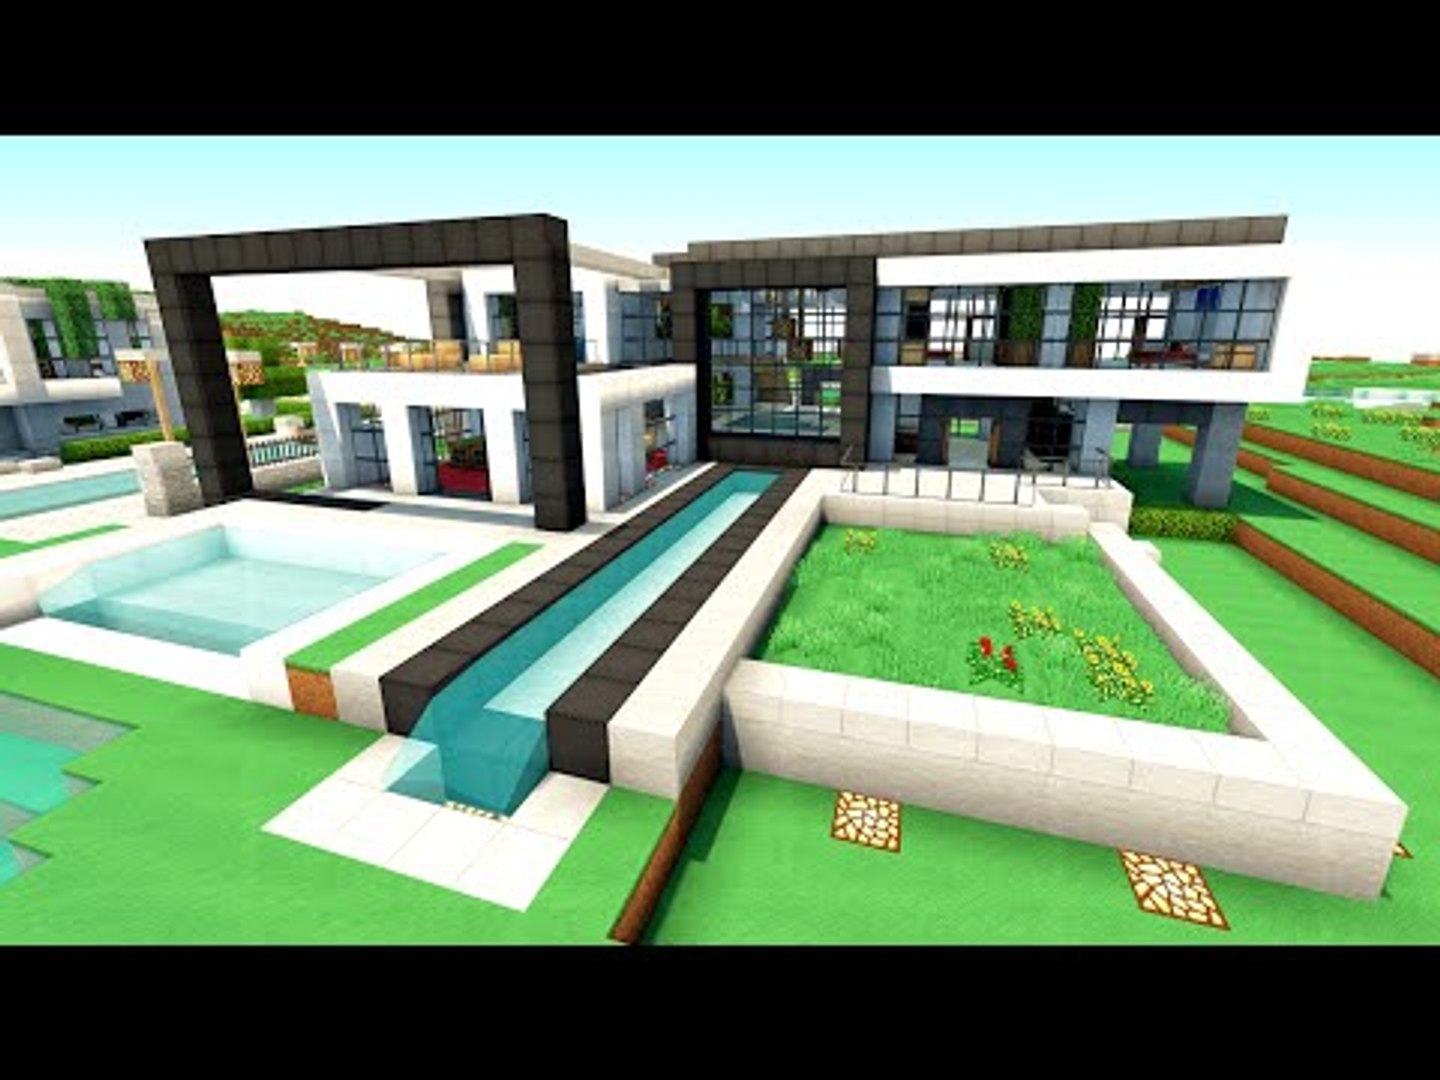 Minecraft: Construindo uma Pequena Casa Moderna 5 